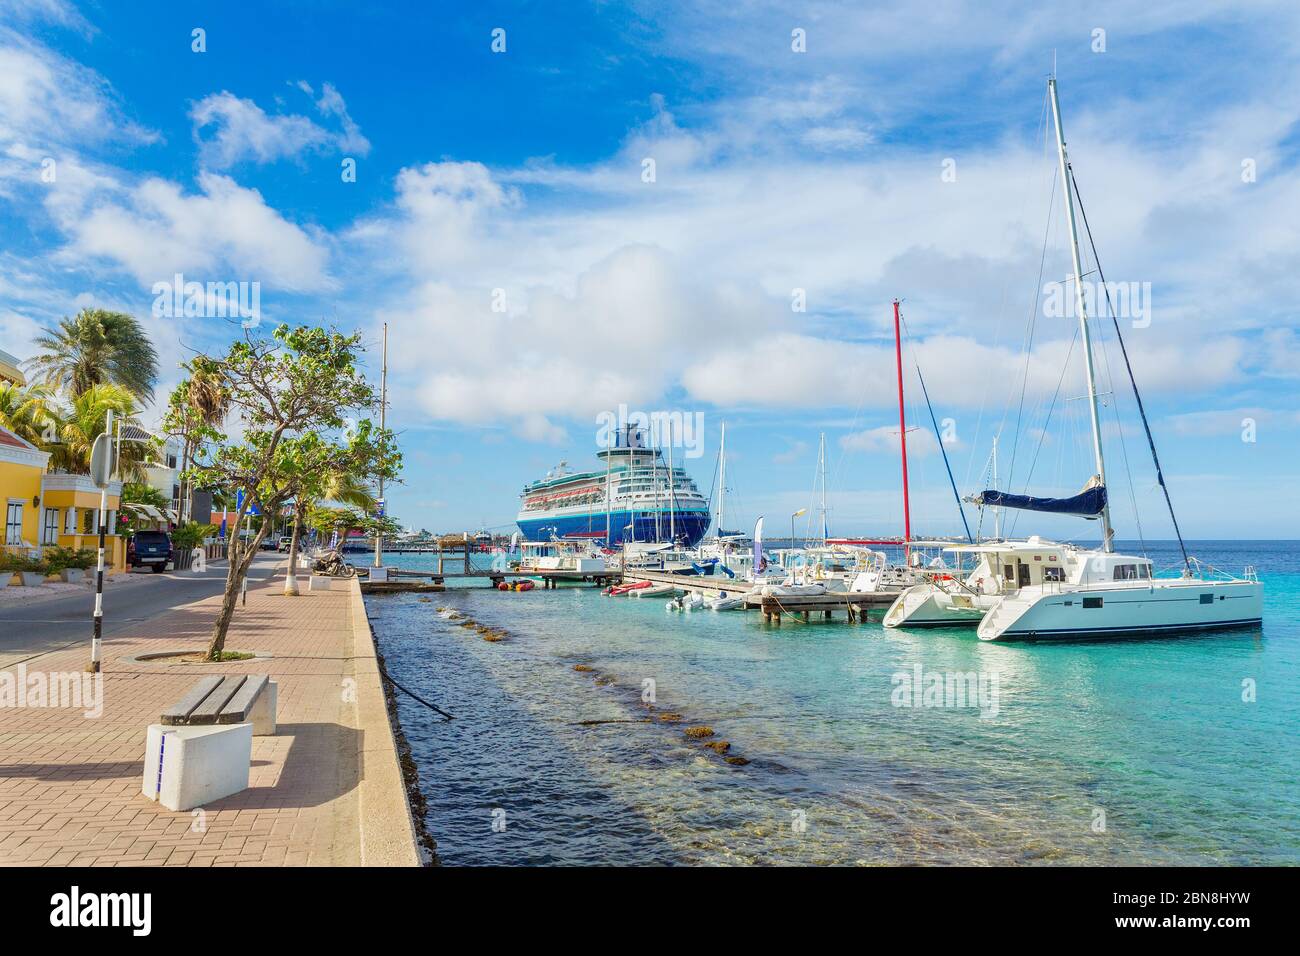 Boulevard en Bonaire con barcos y cruceros en el mar Foto de stock